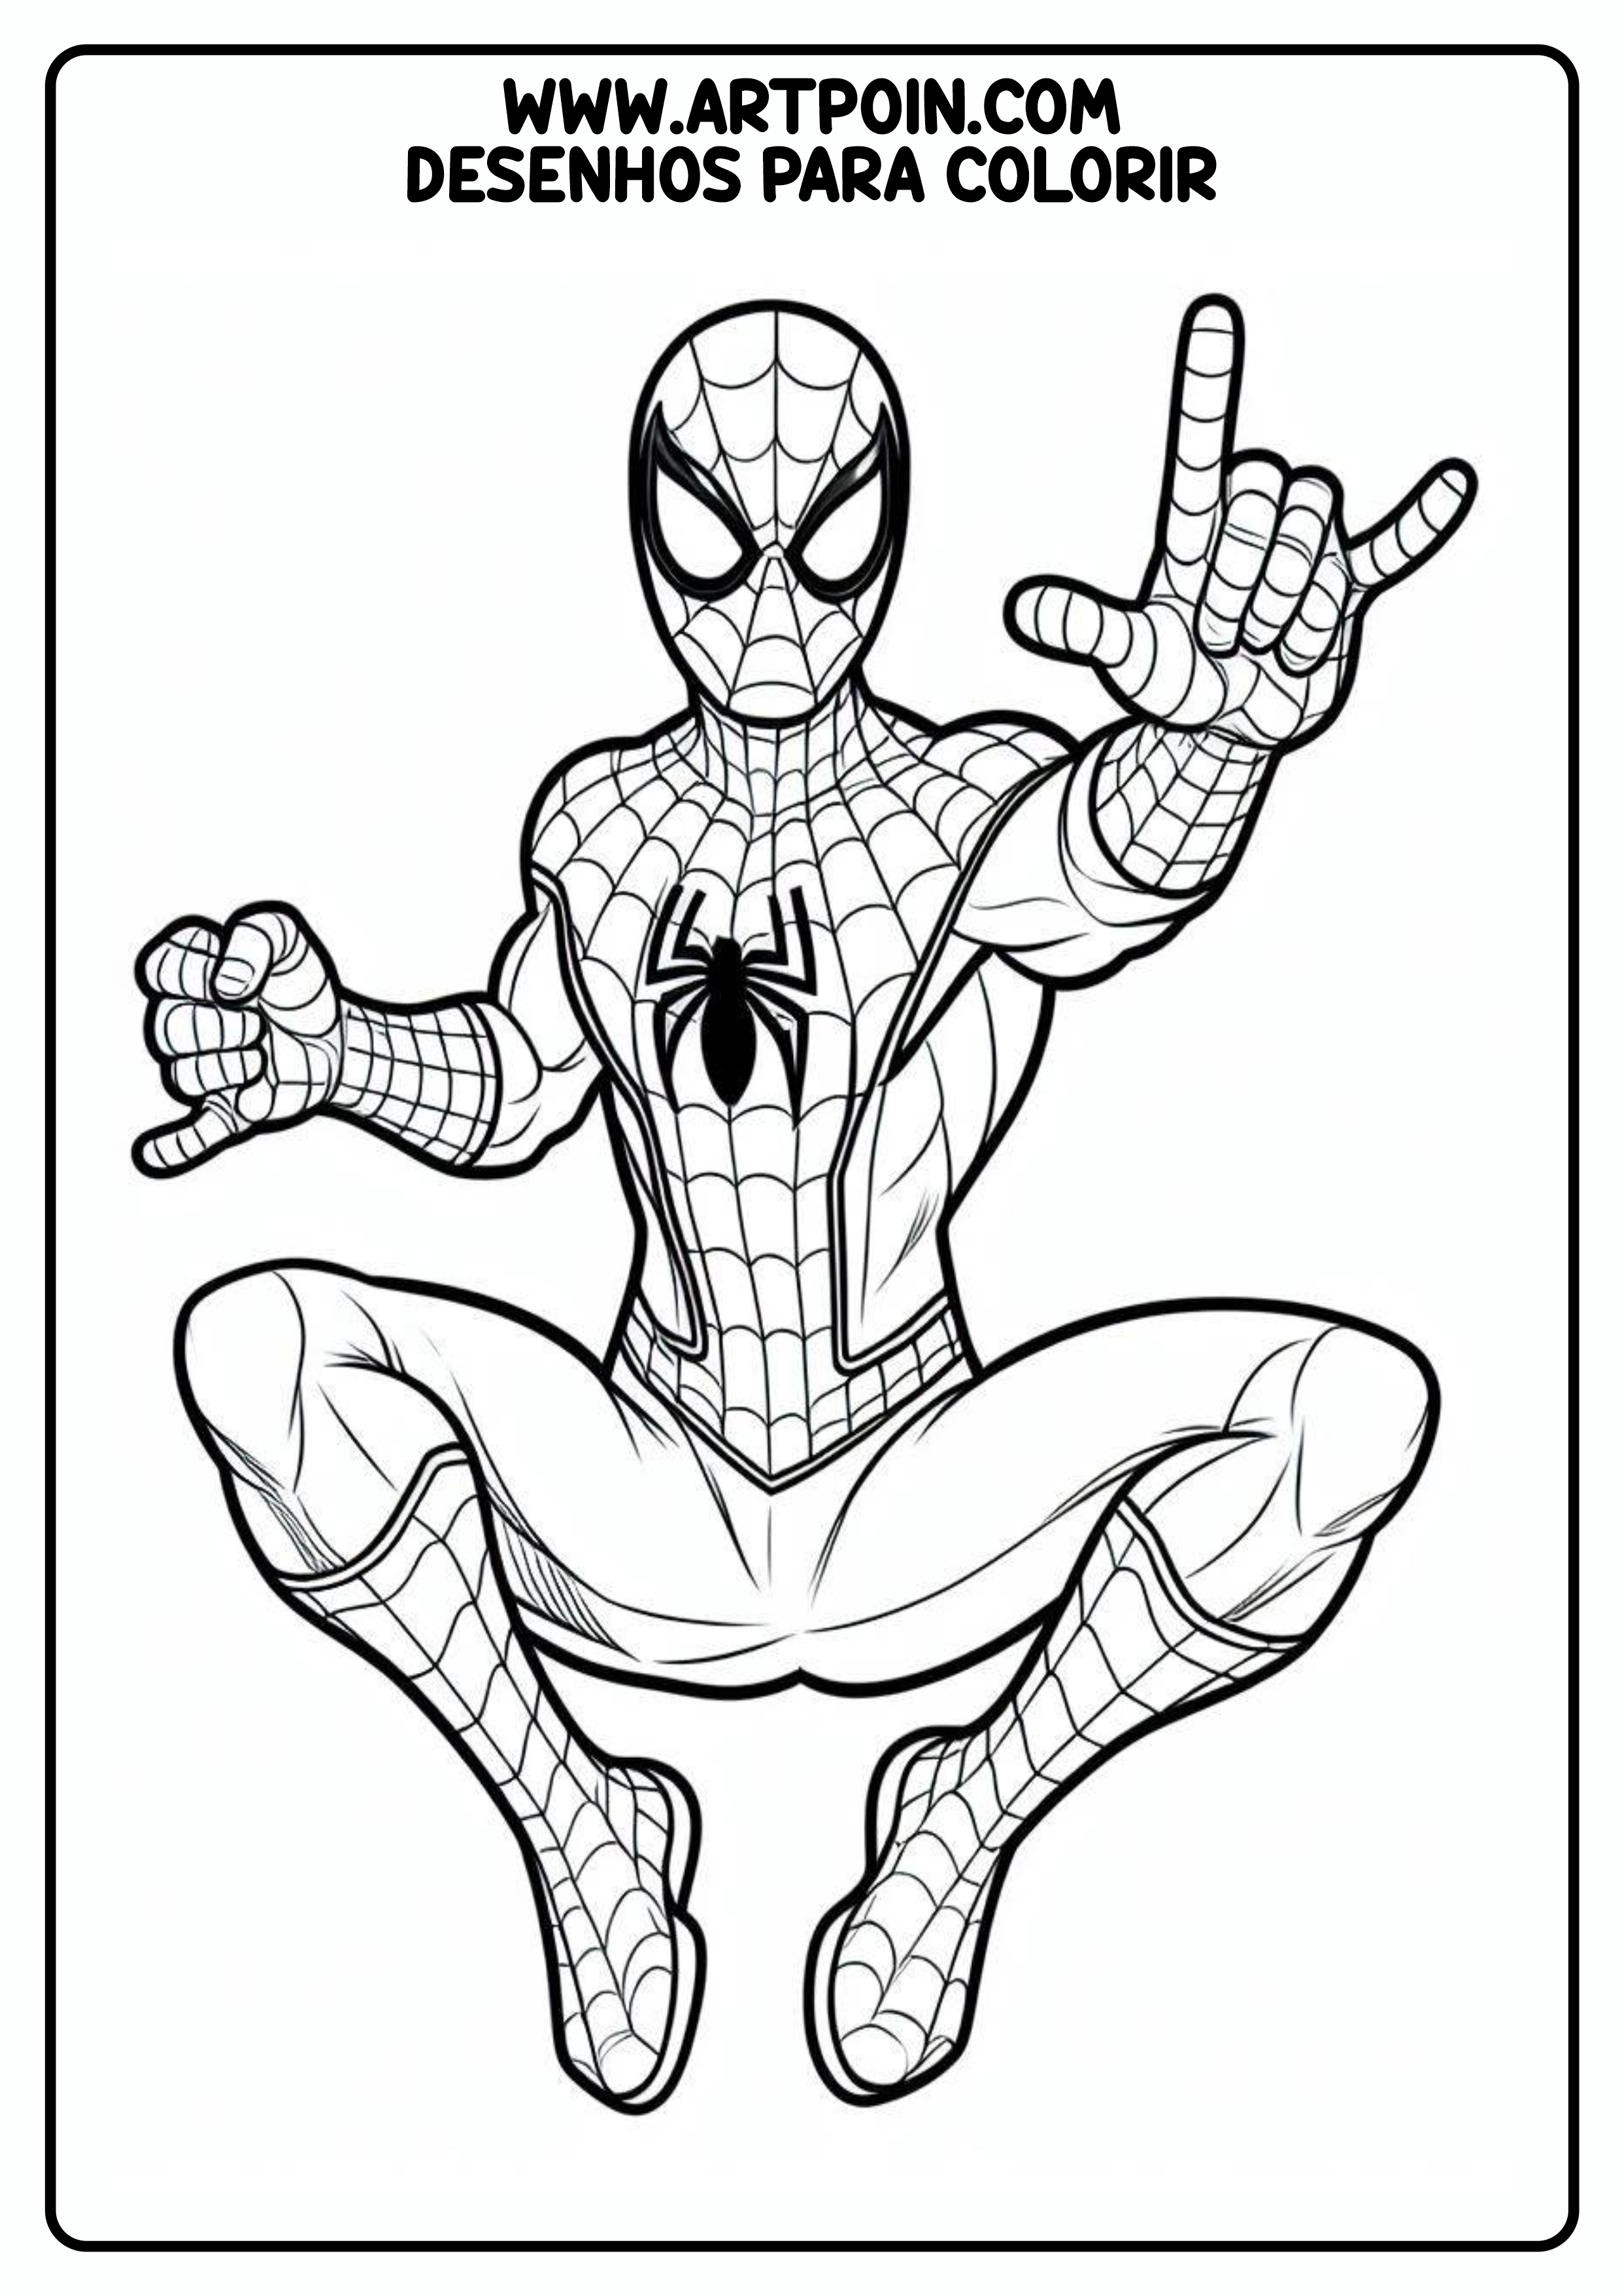 Homem-Aranha spider-man desenho para colorir artes visuais para imprimir atividades para crianças coloring page png